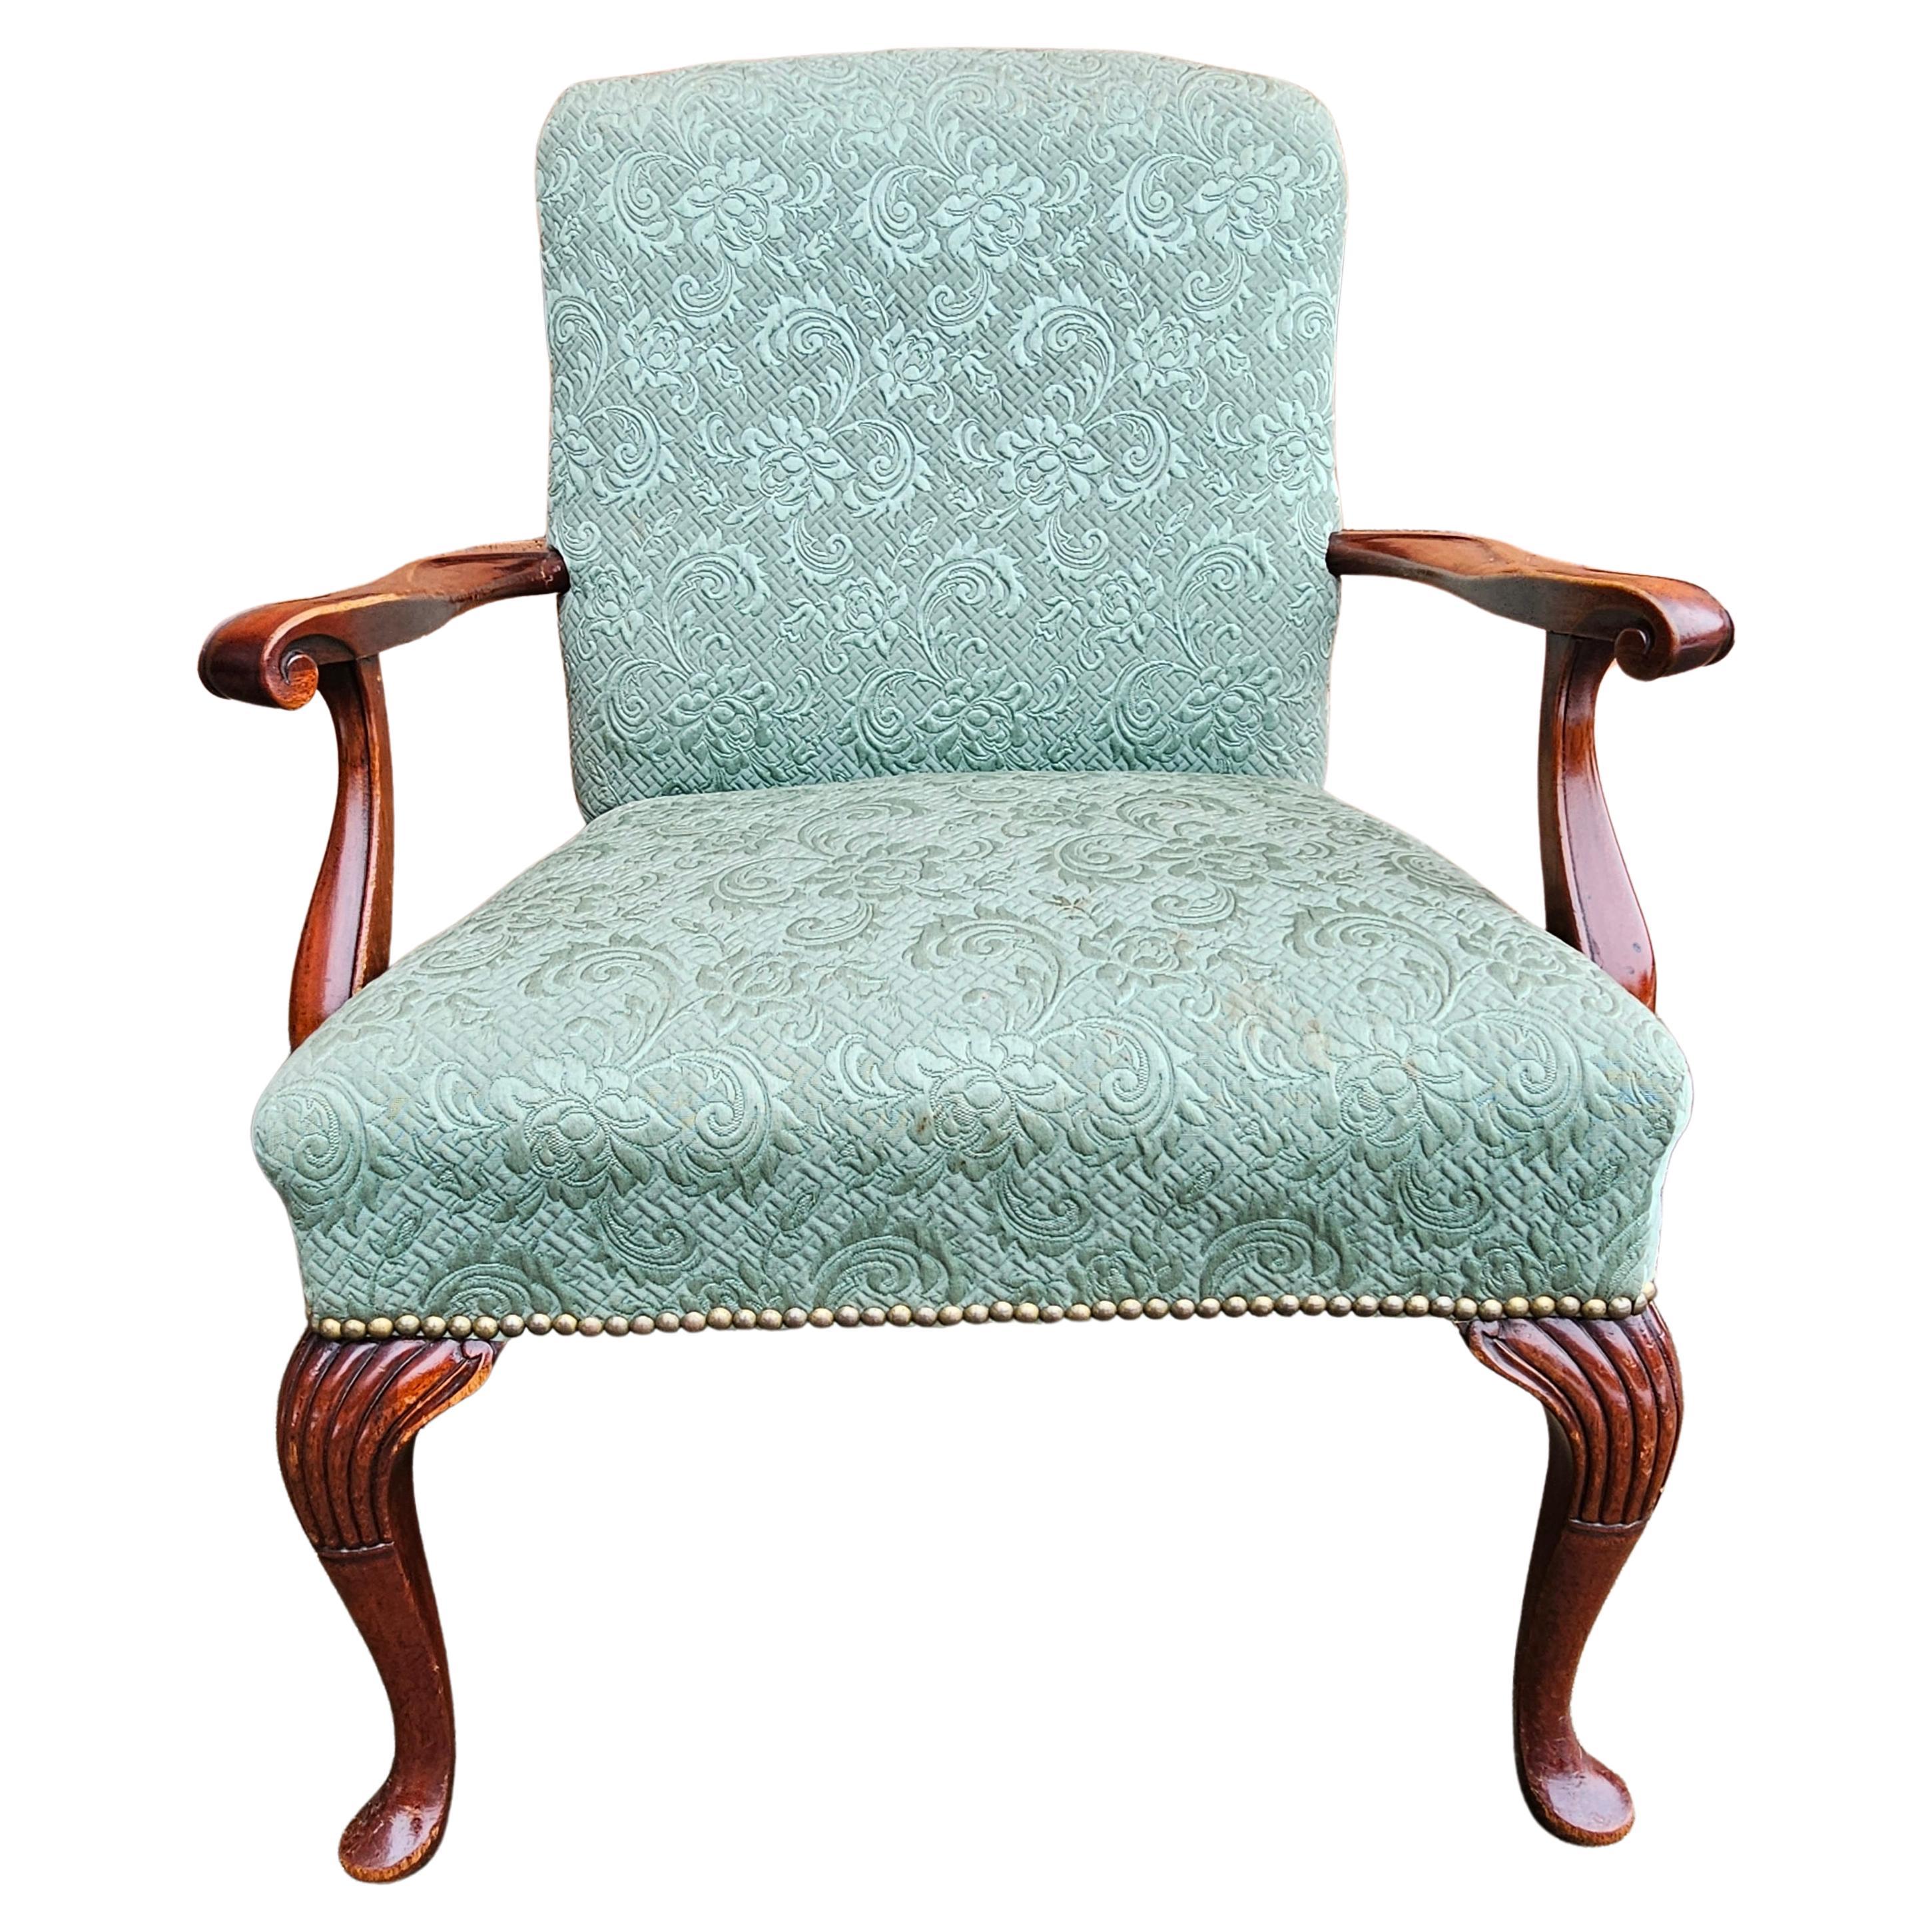 Mitte 20. Jahrhundert Queen Anne Style Mahagoni gepolstert Sessel